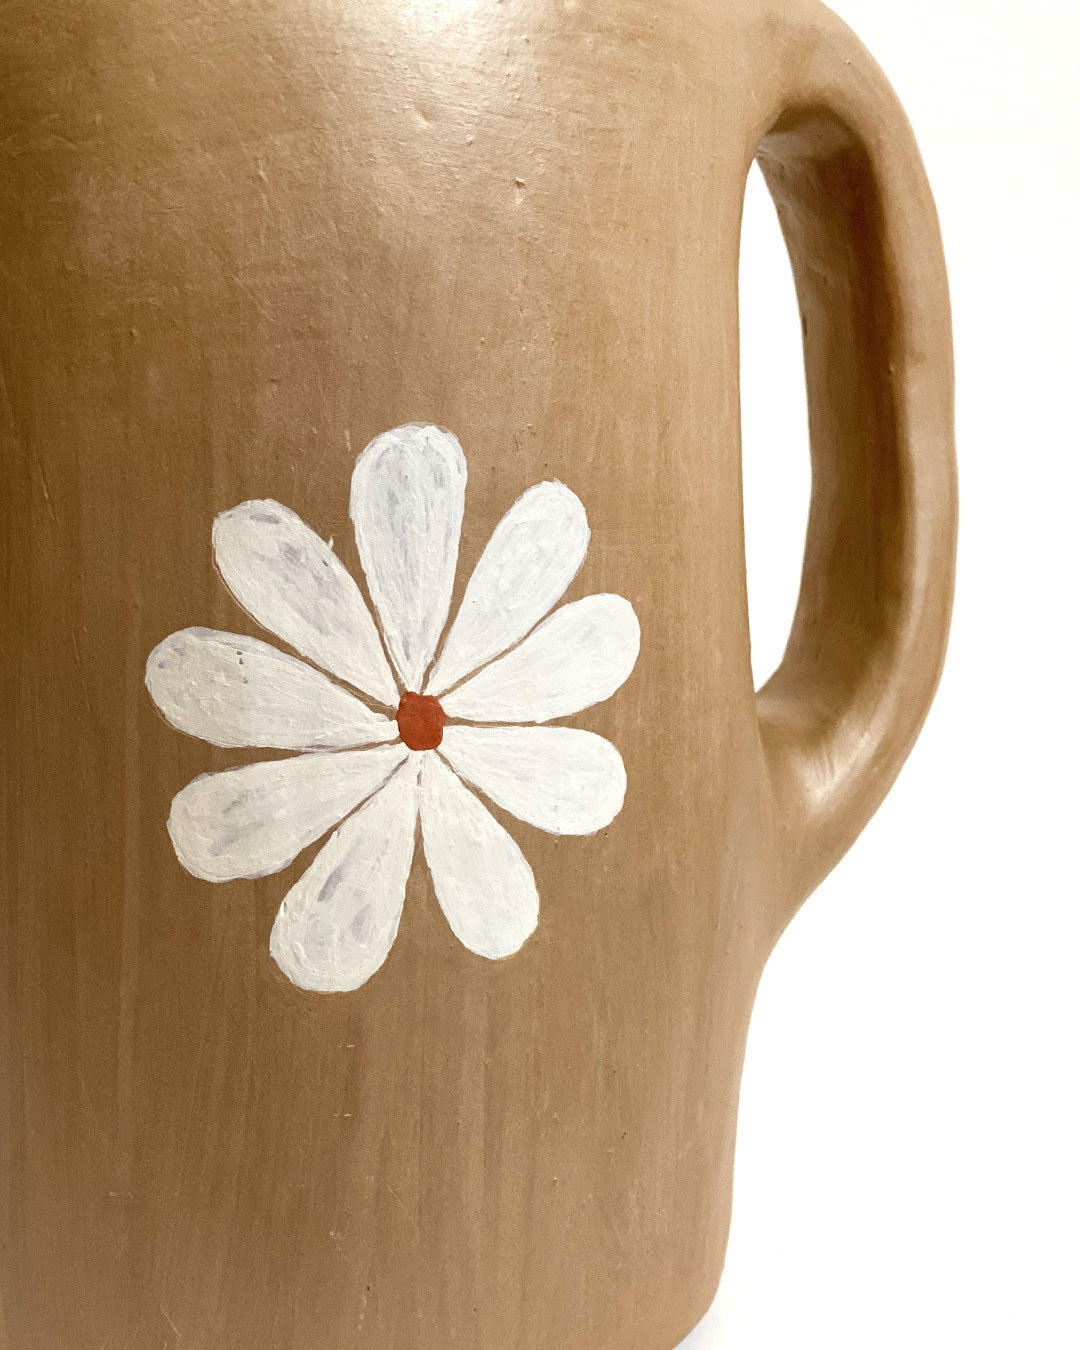 Jarra/vaso marrom com flor branca (grande) – Vale do Jequitinhonha